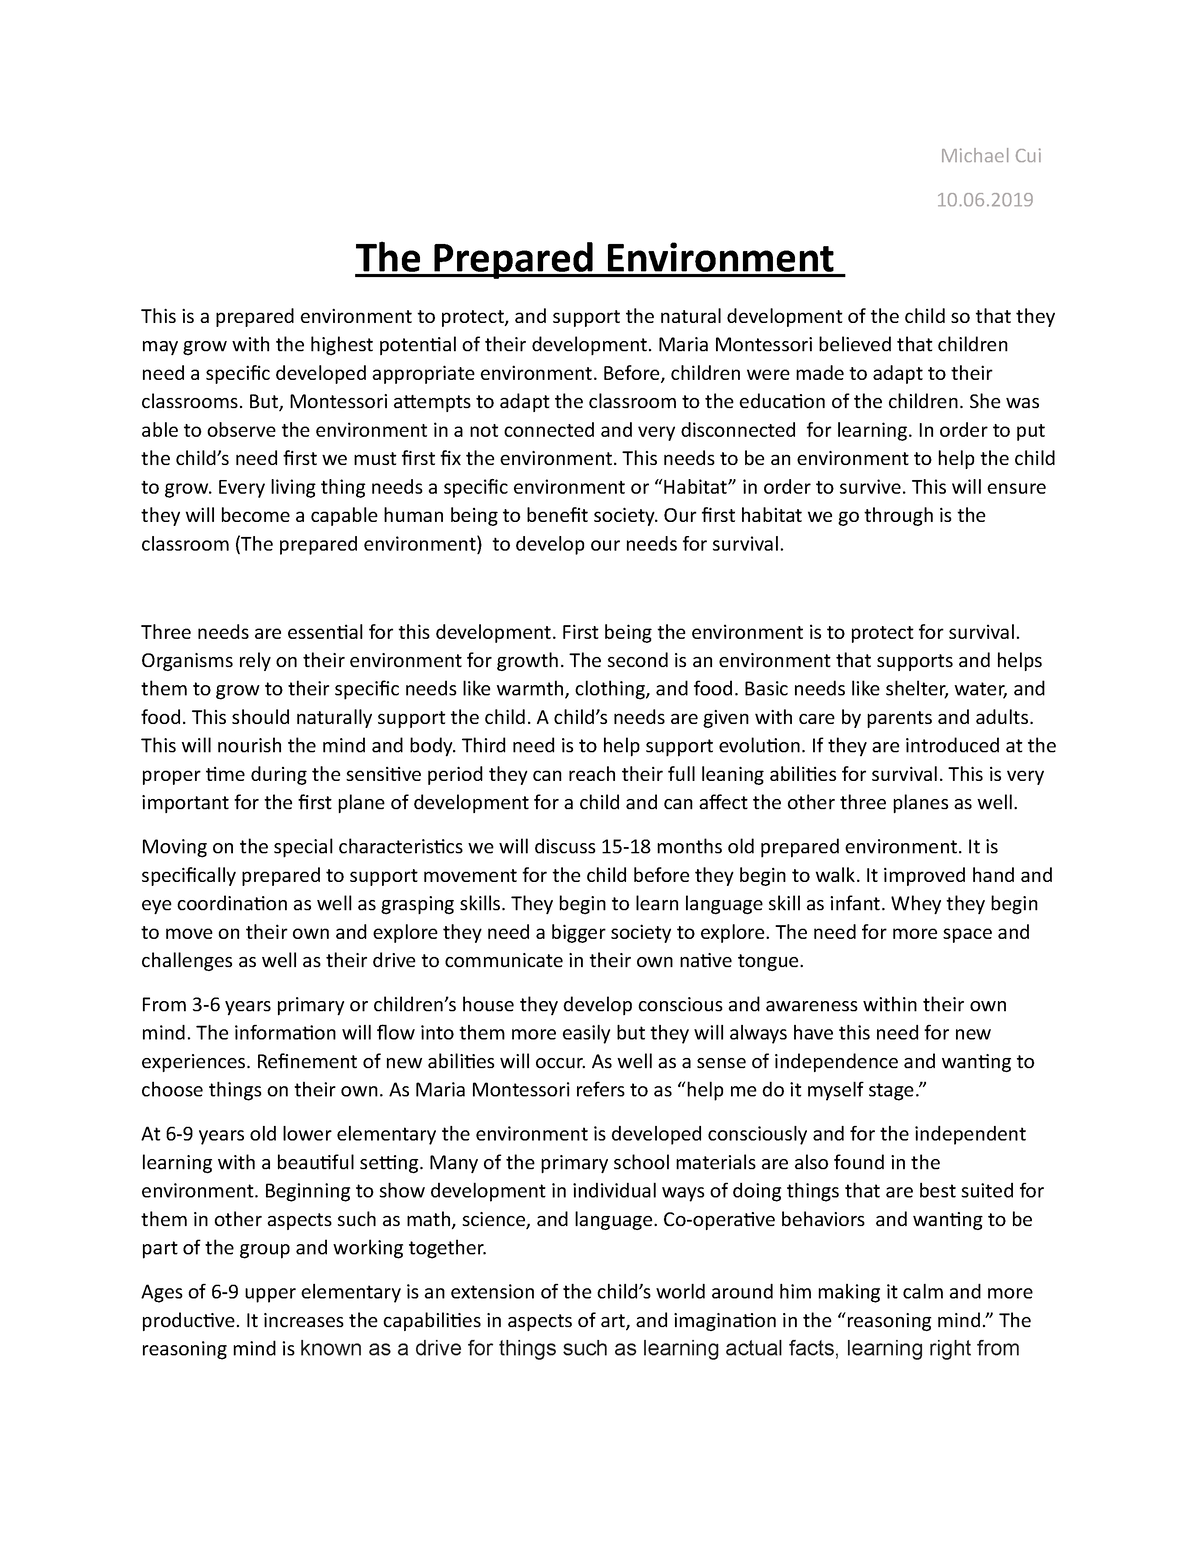 the prepared environment essay montessori